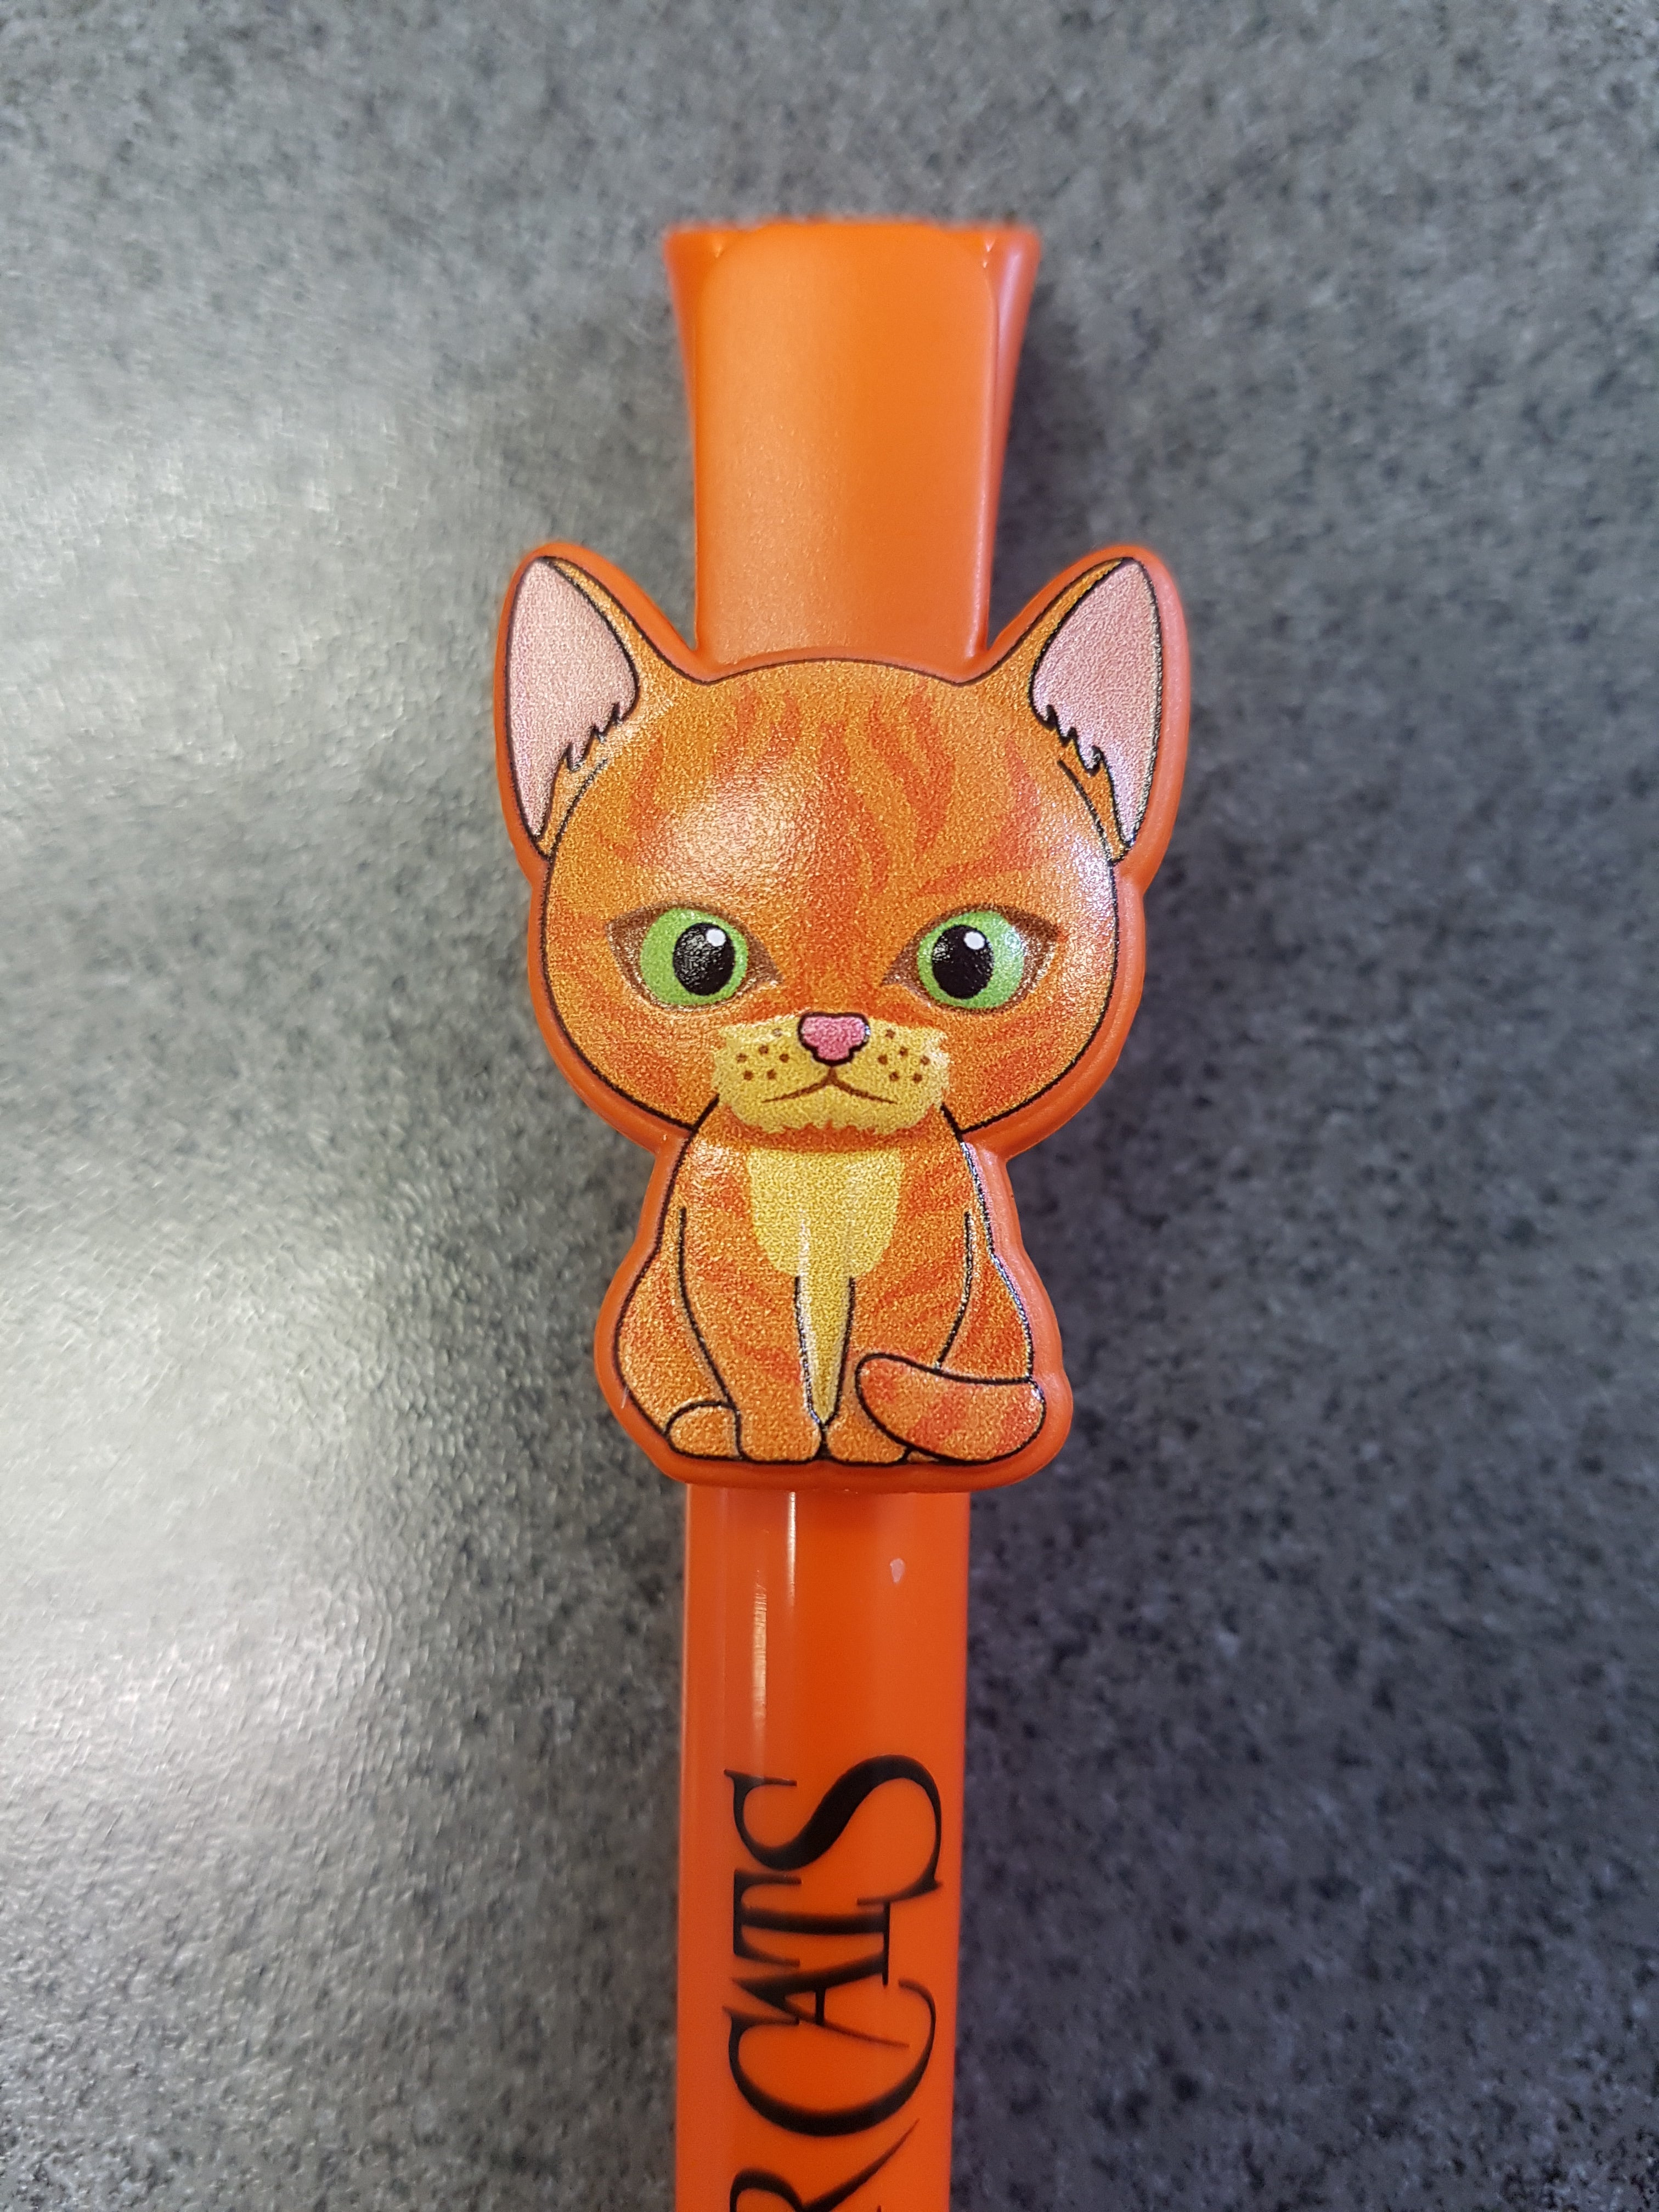 Warrior Cats Minis Pencil Tin